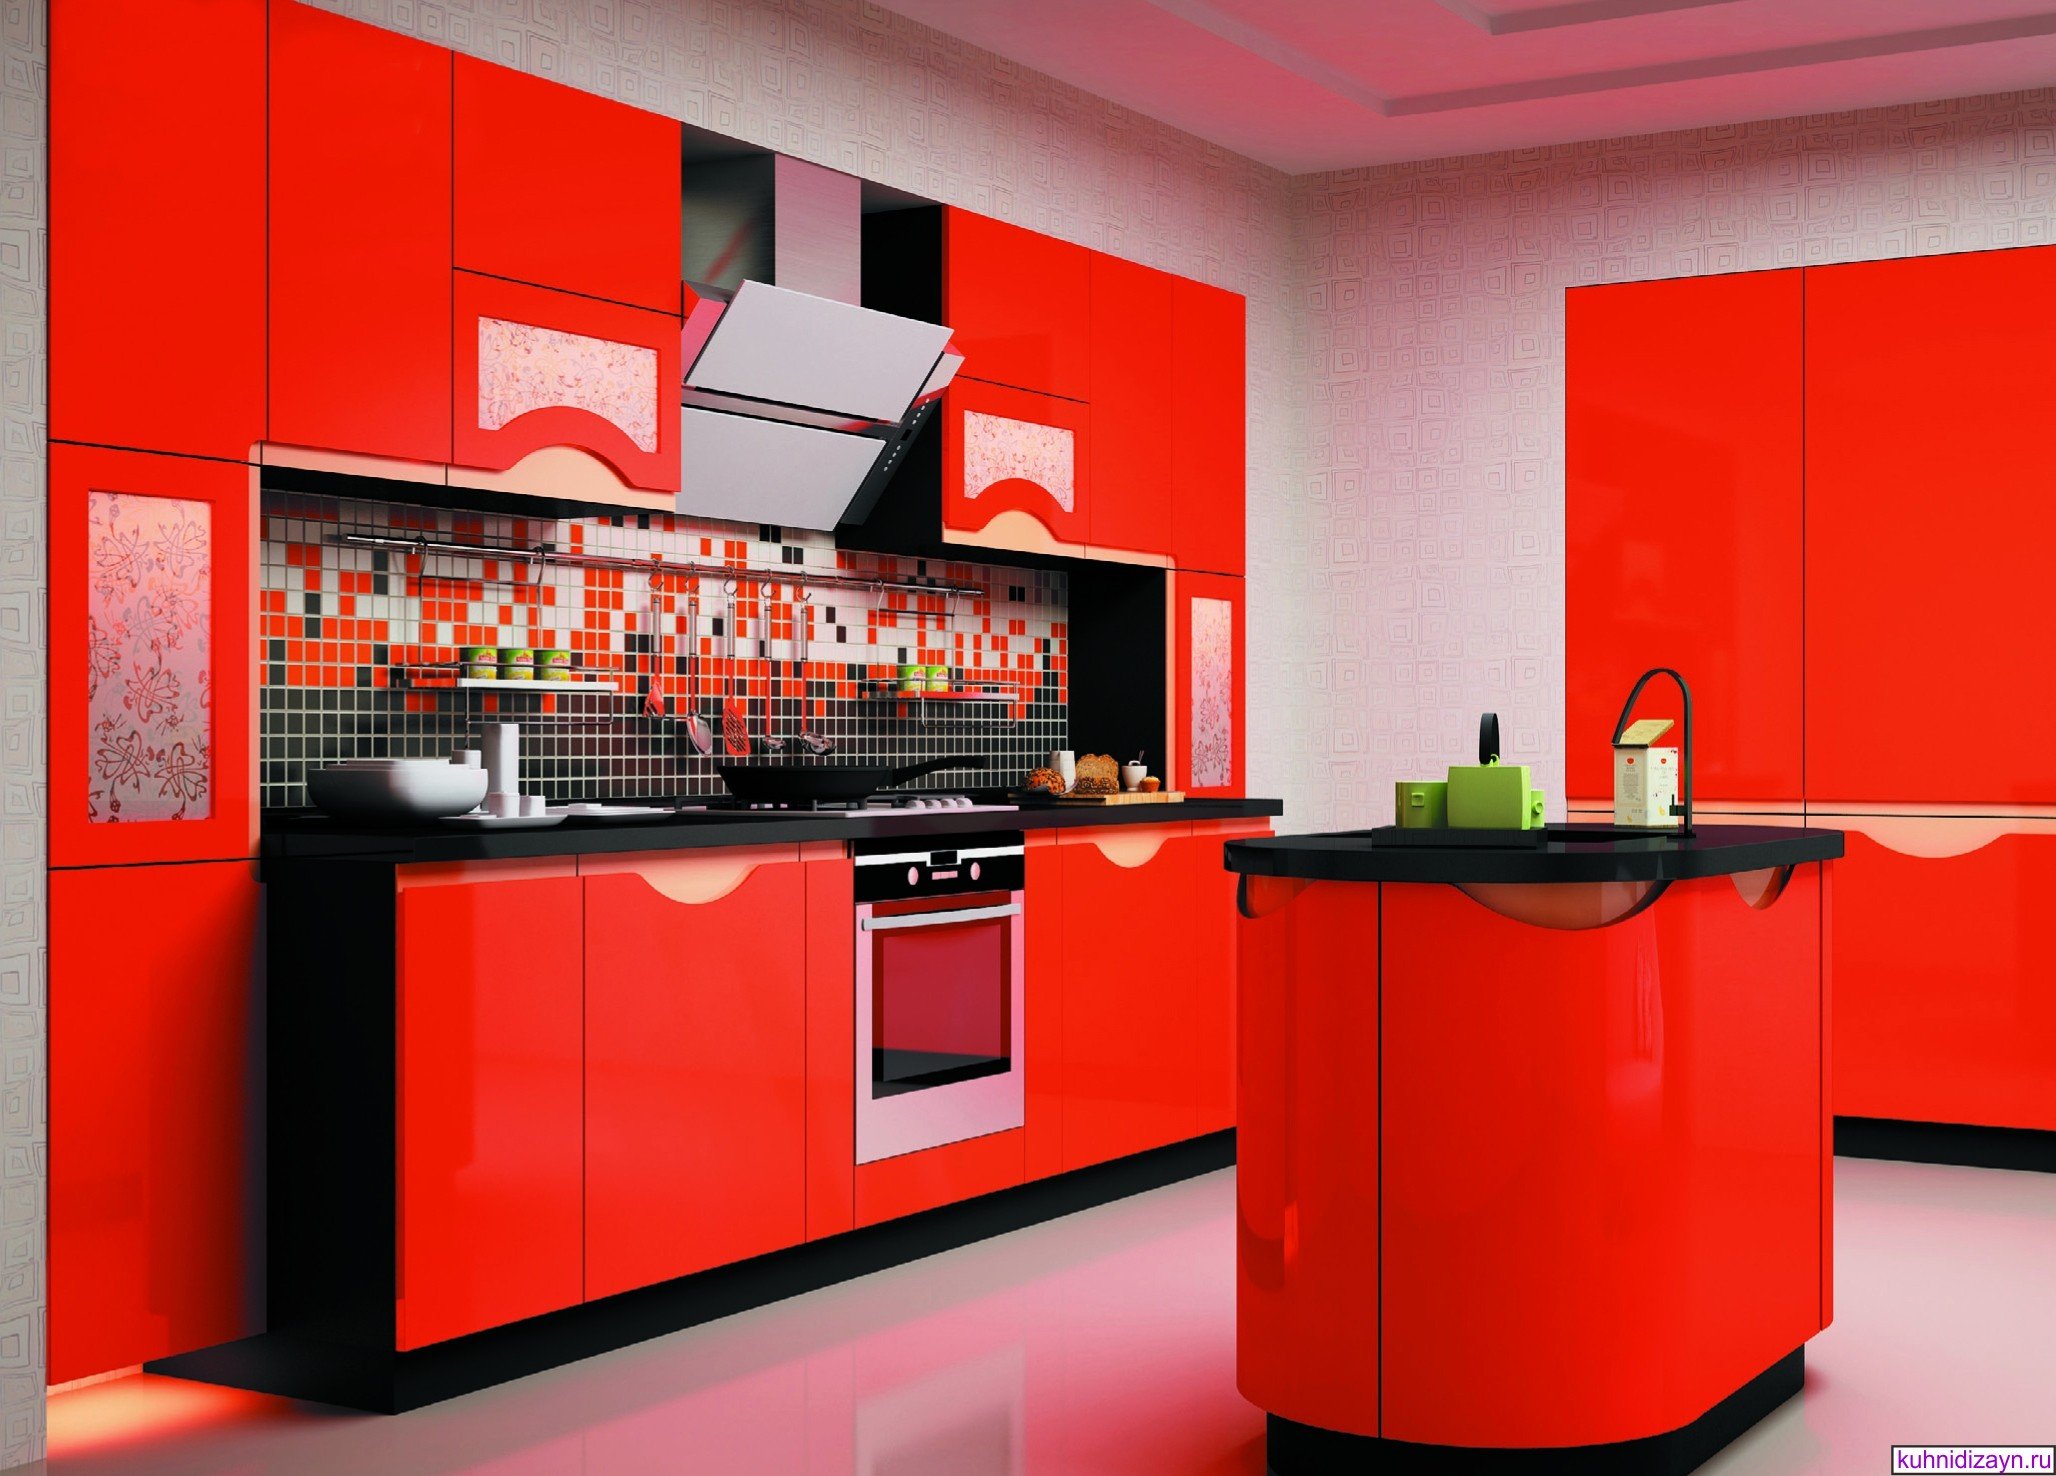 Обои для красной кухни:как подобрать цвет стен обои и потолок
обои для красной кухни:как подобрать цвет стен обои и потолок